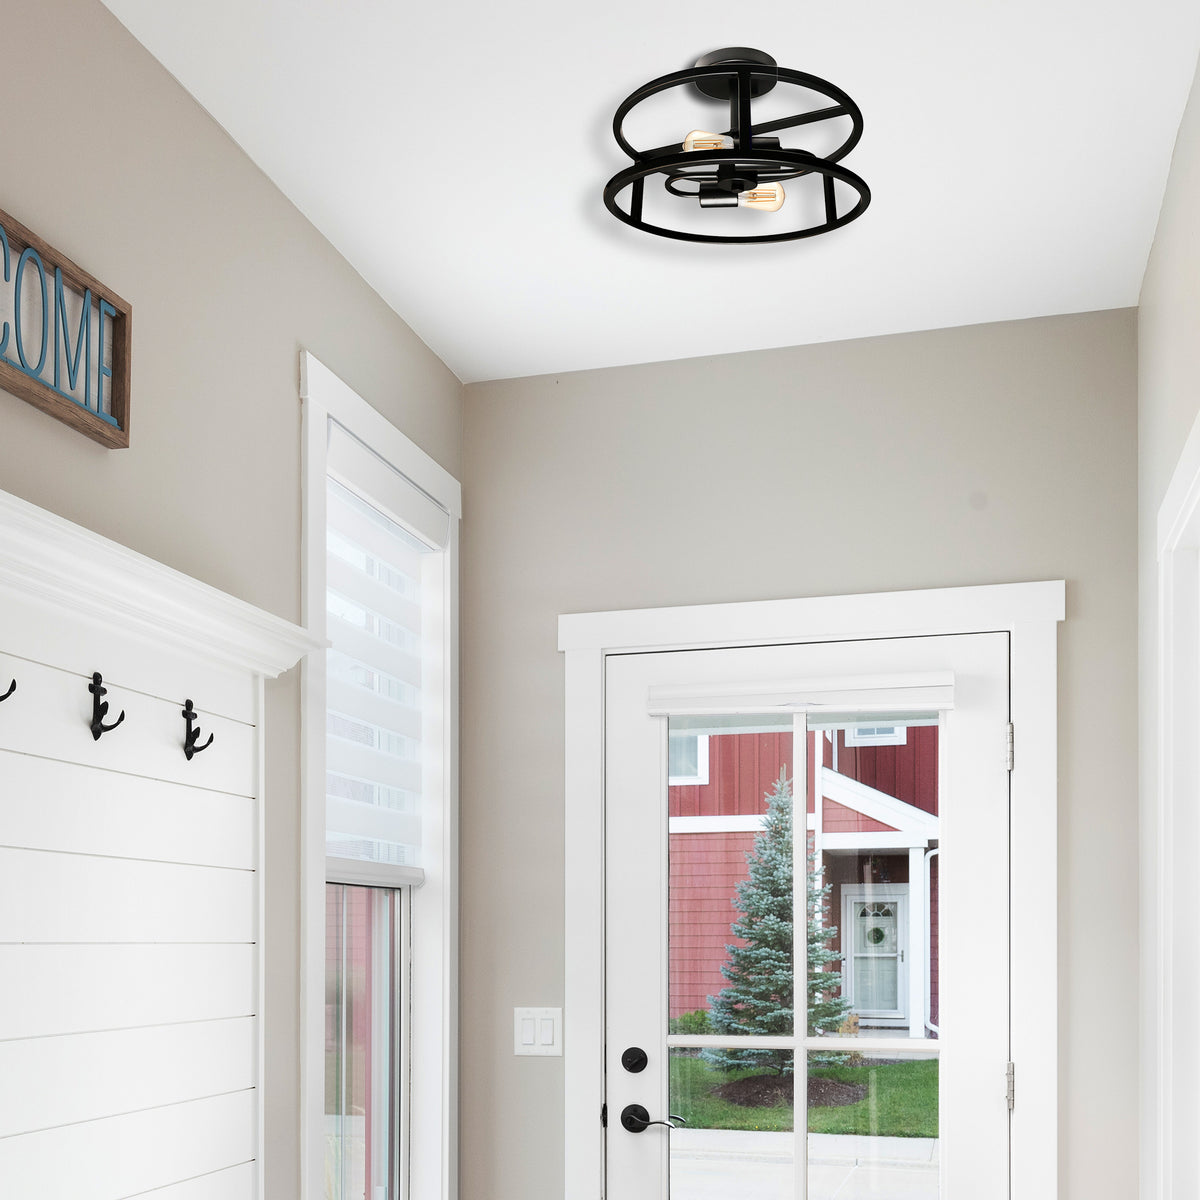 Modern black semi flush mount ceiling light with 2 light 